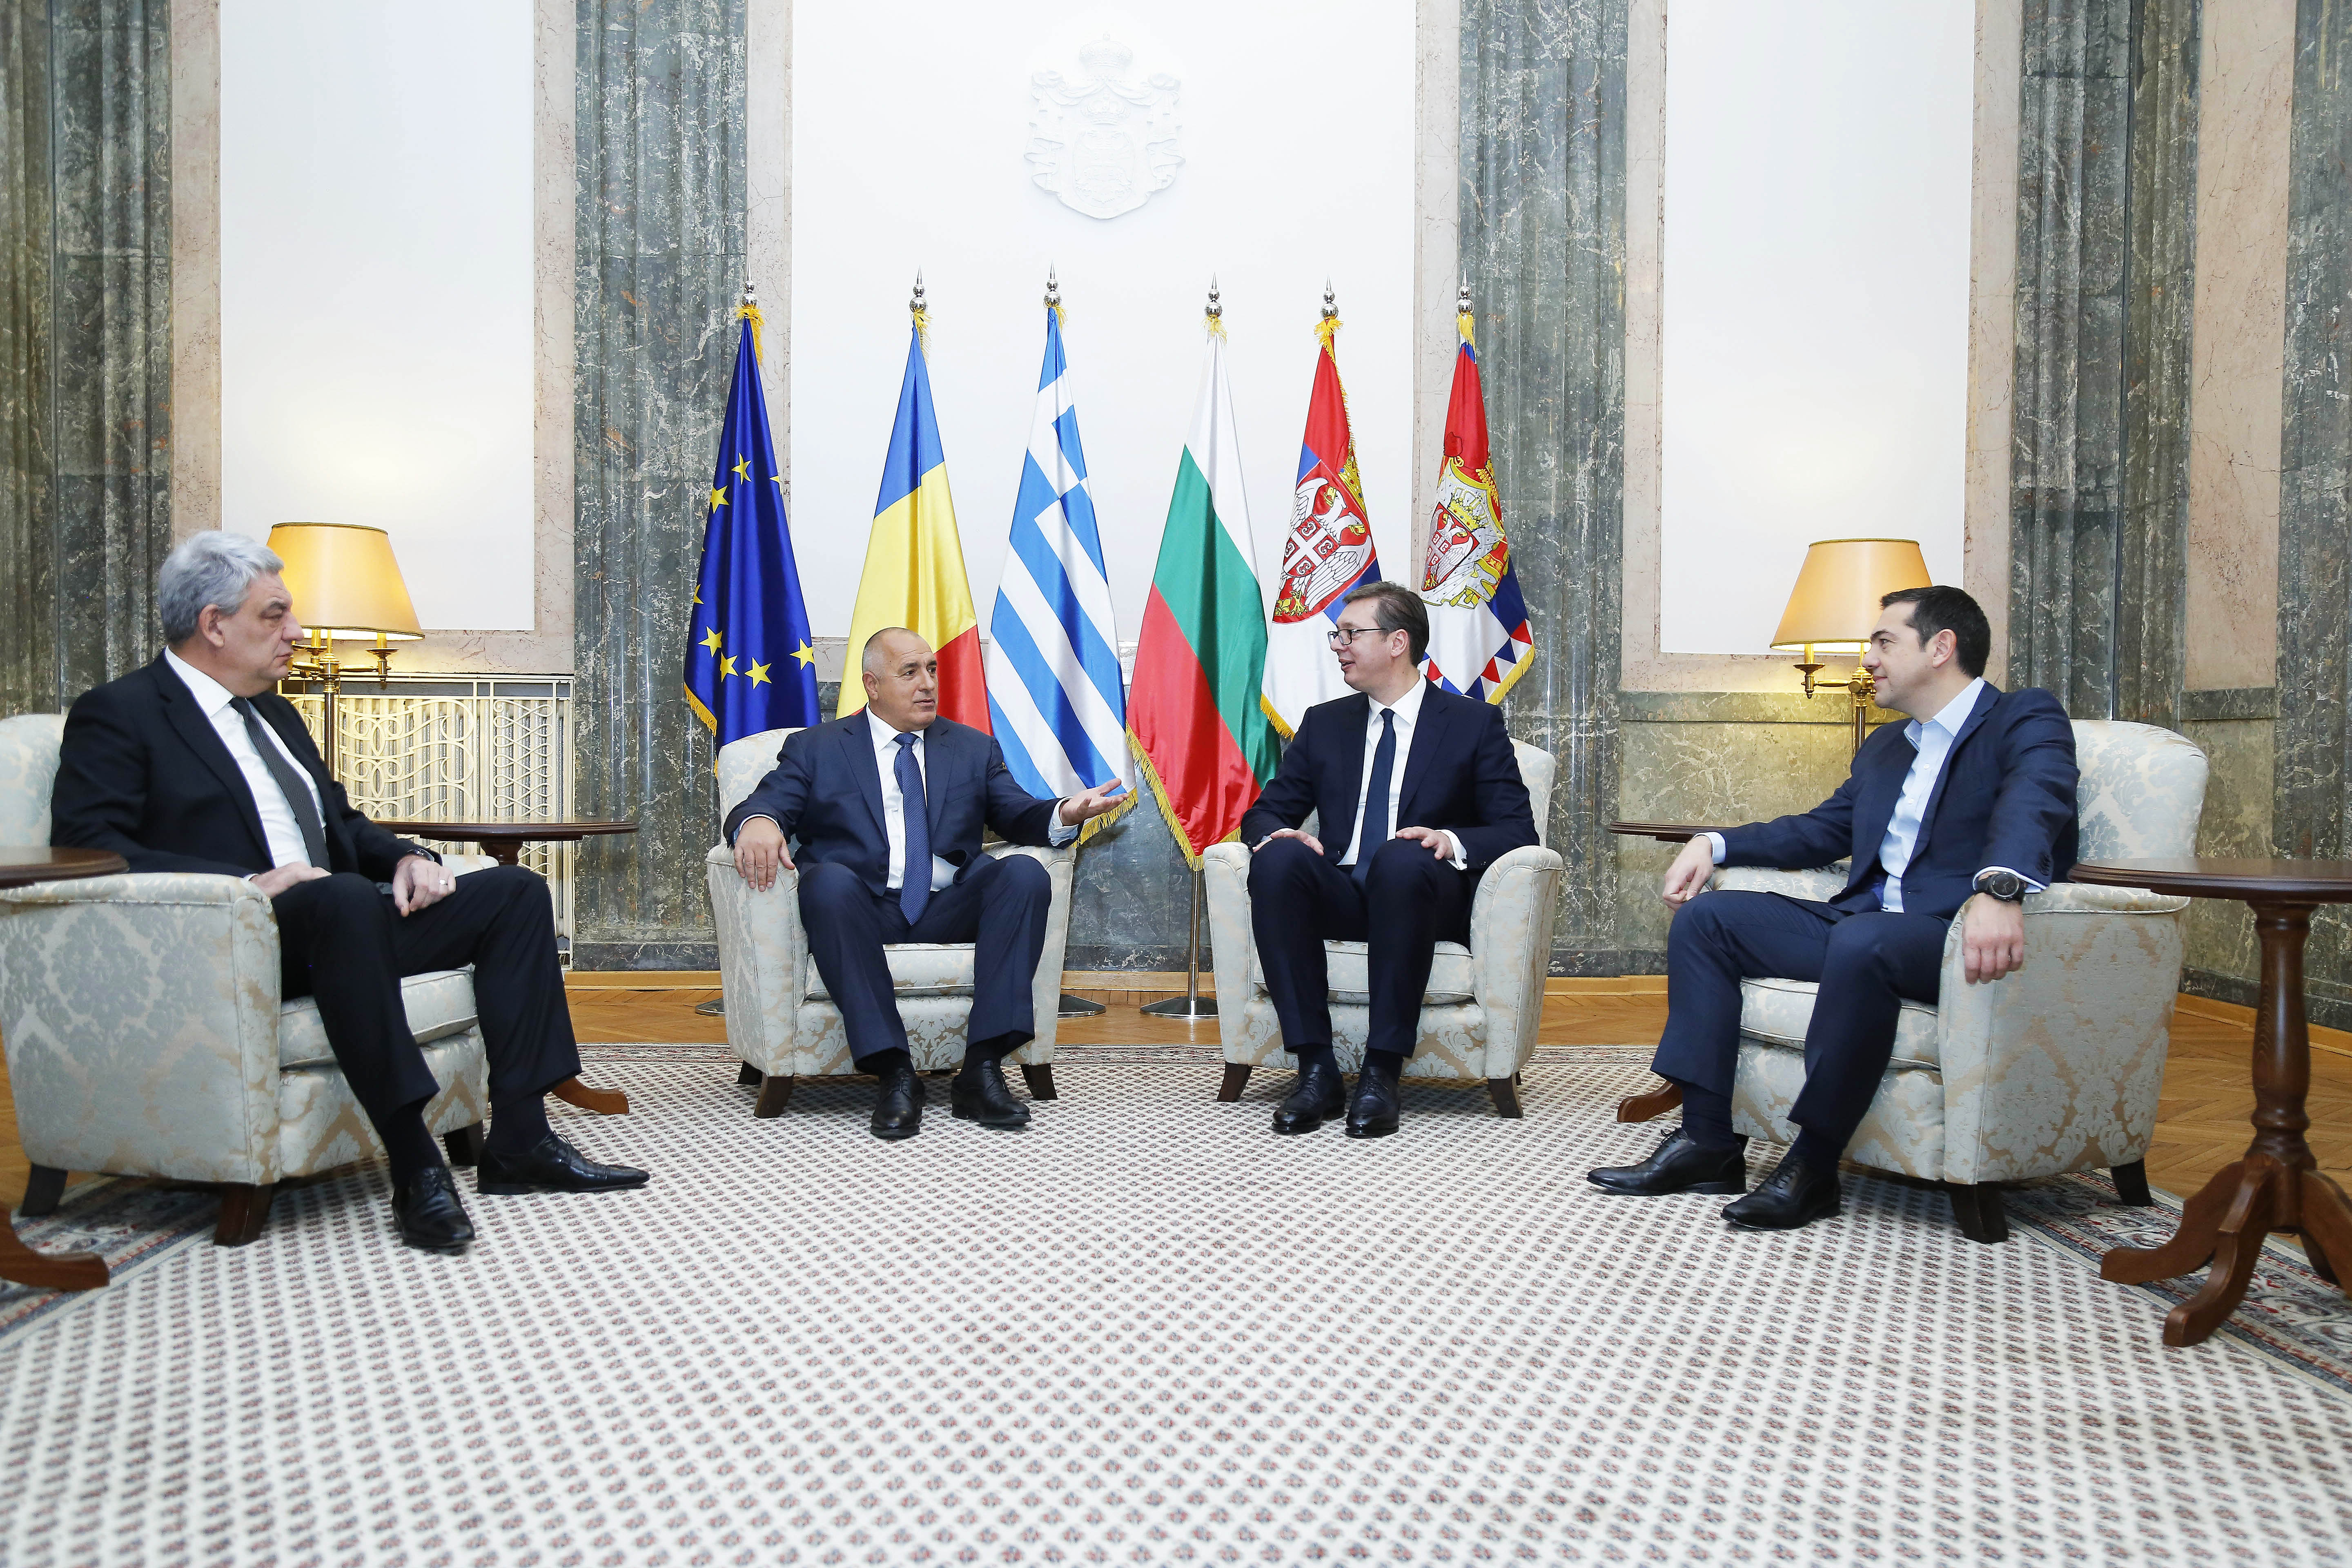 Лидерите на четирите страни обсъждат развитието на икономическото сътрудничество, укрепването на регионалната стабилност и подкрепата за интеграцията на държавите в региона.